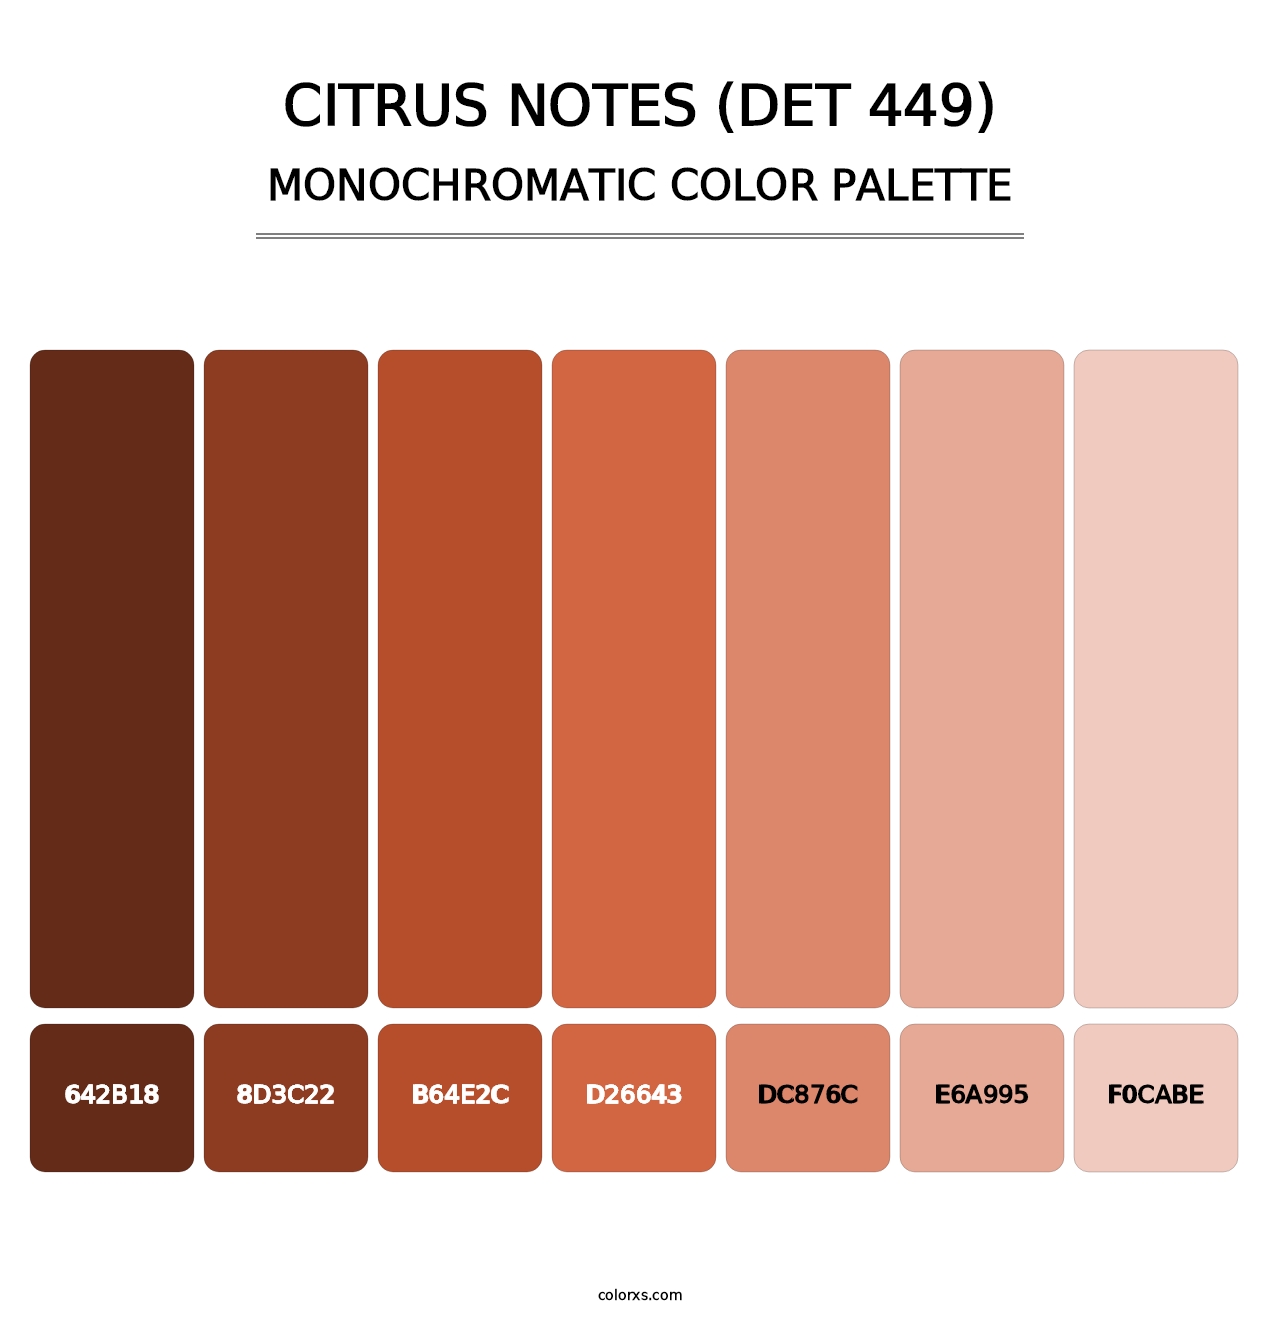 Citrus Notes (DET 449) - Monochromatic Color Palette